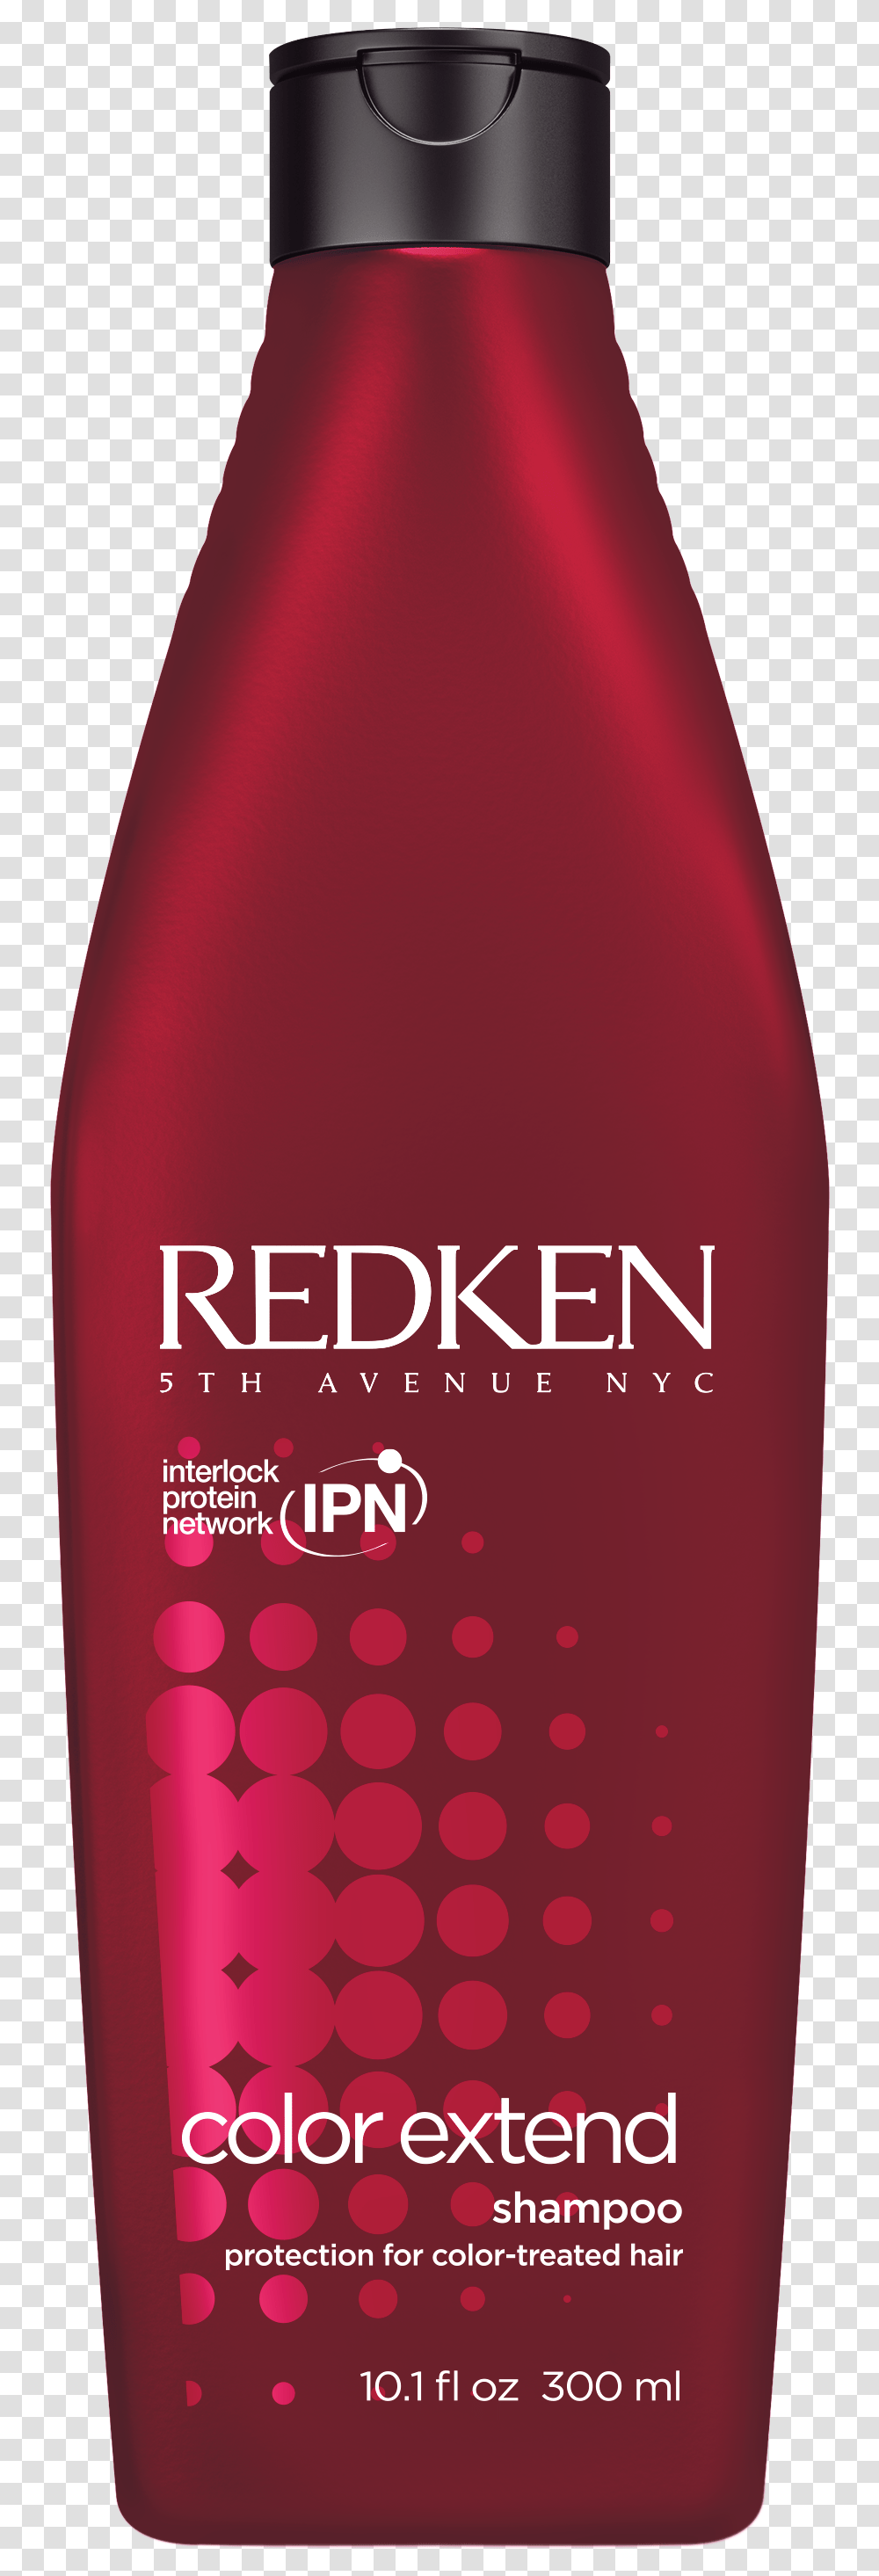 Redken Color Extend Shampoo Hair Styling Products Redken, Bottle, Beverage, Drink, Beer Transparent Png